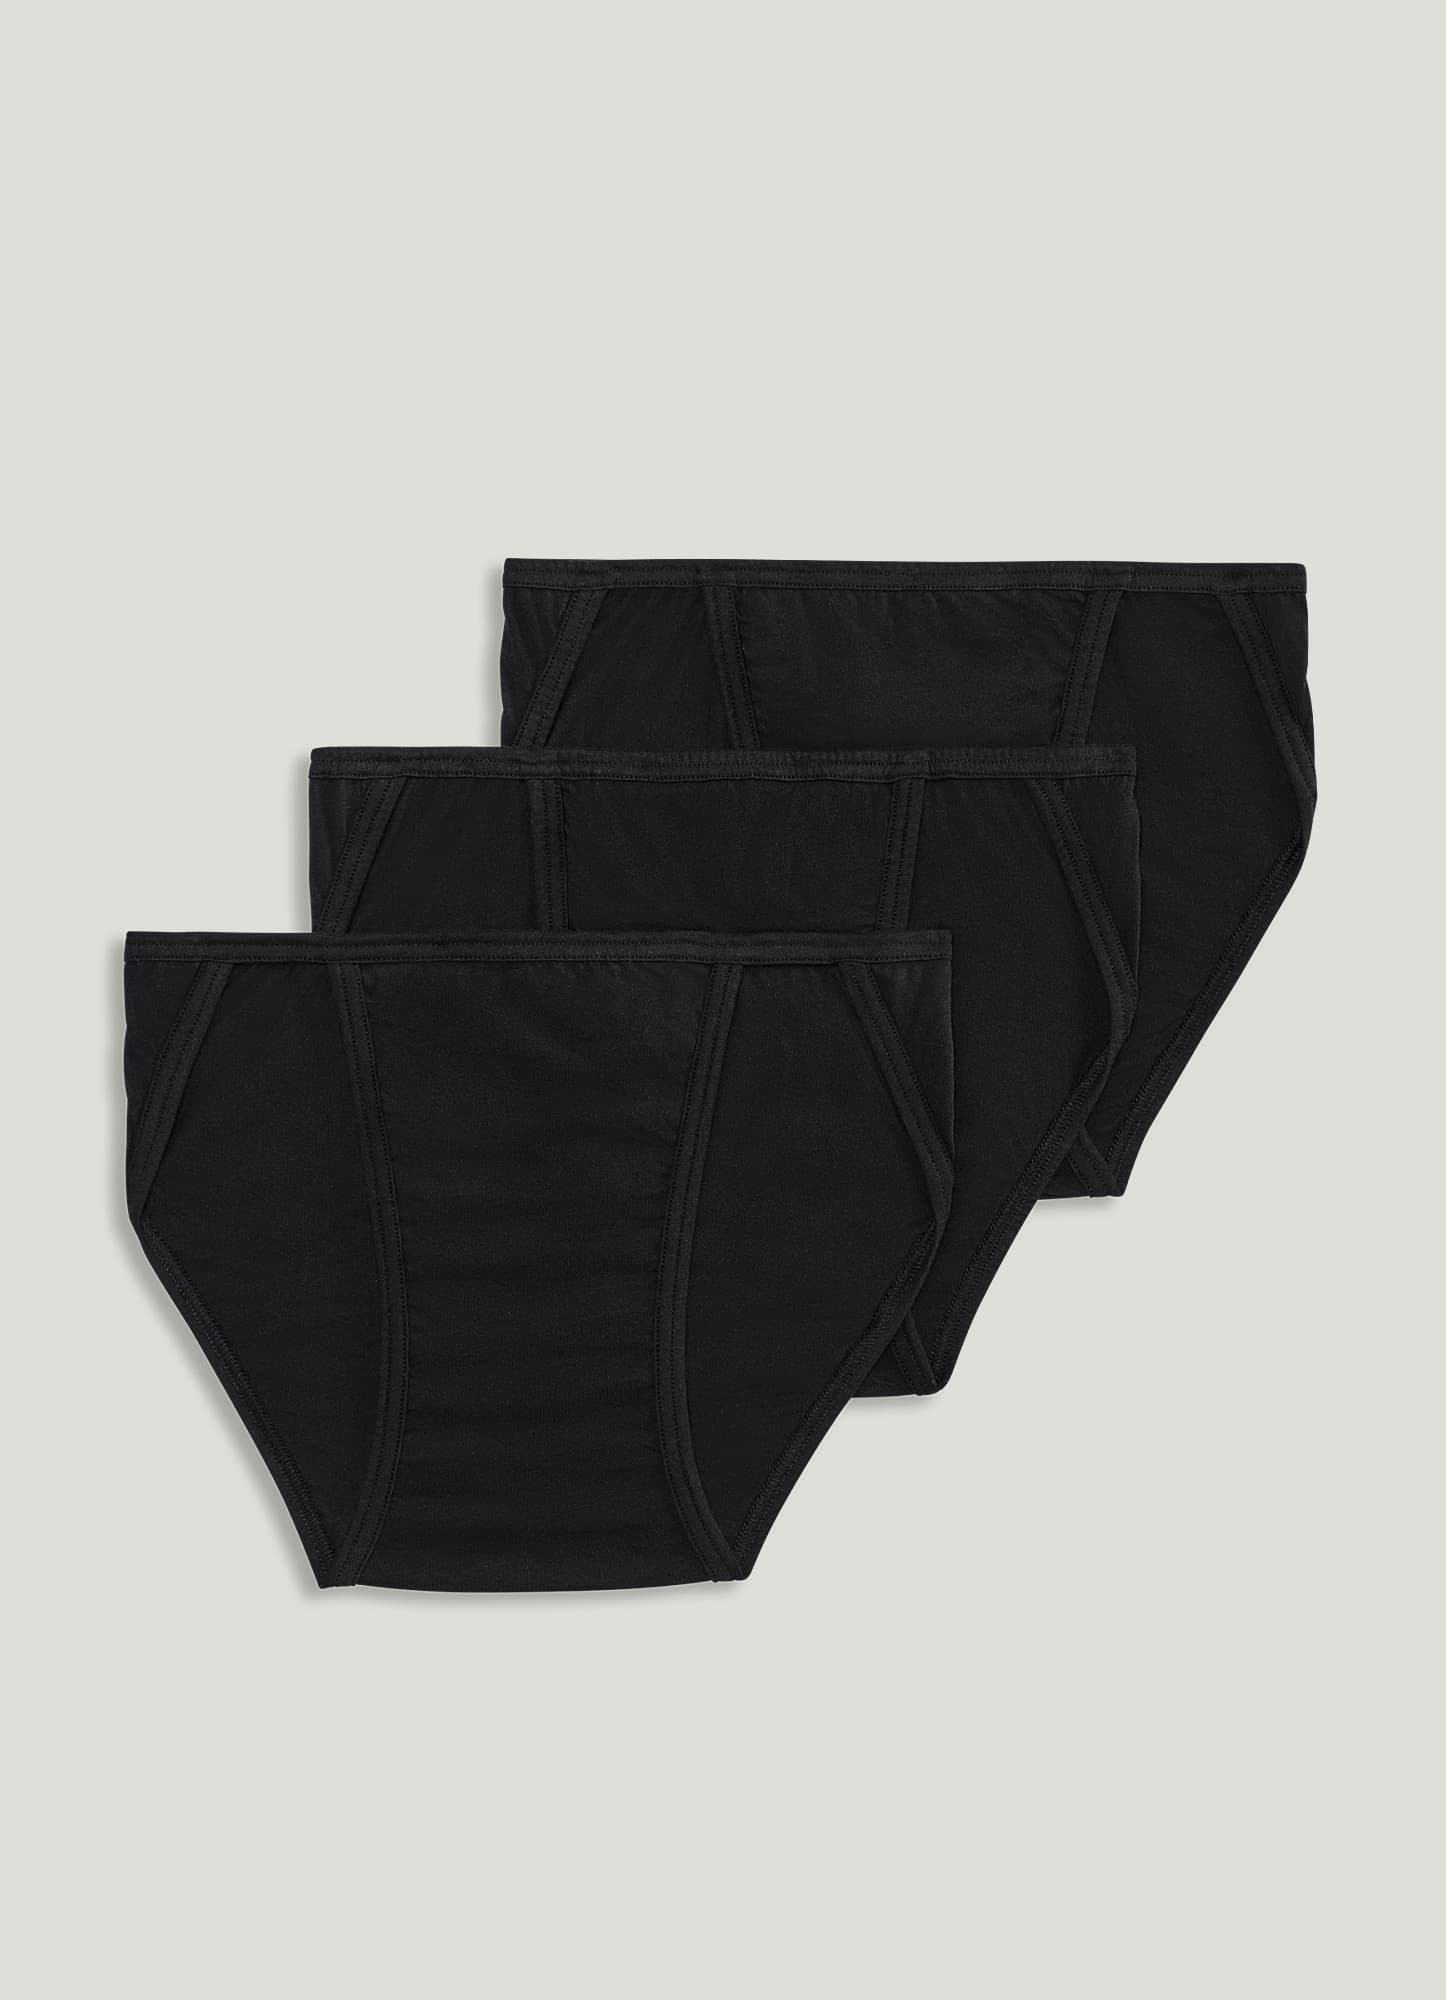 Men's Jockey Elance Bikini Size Medium 32-34 Tie Dye Underwear -  Canada